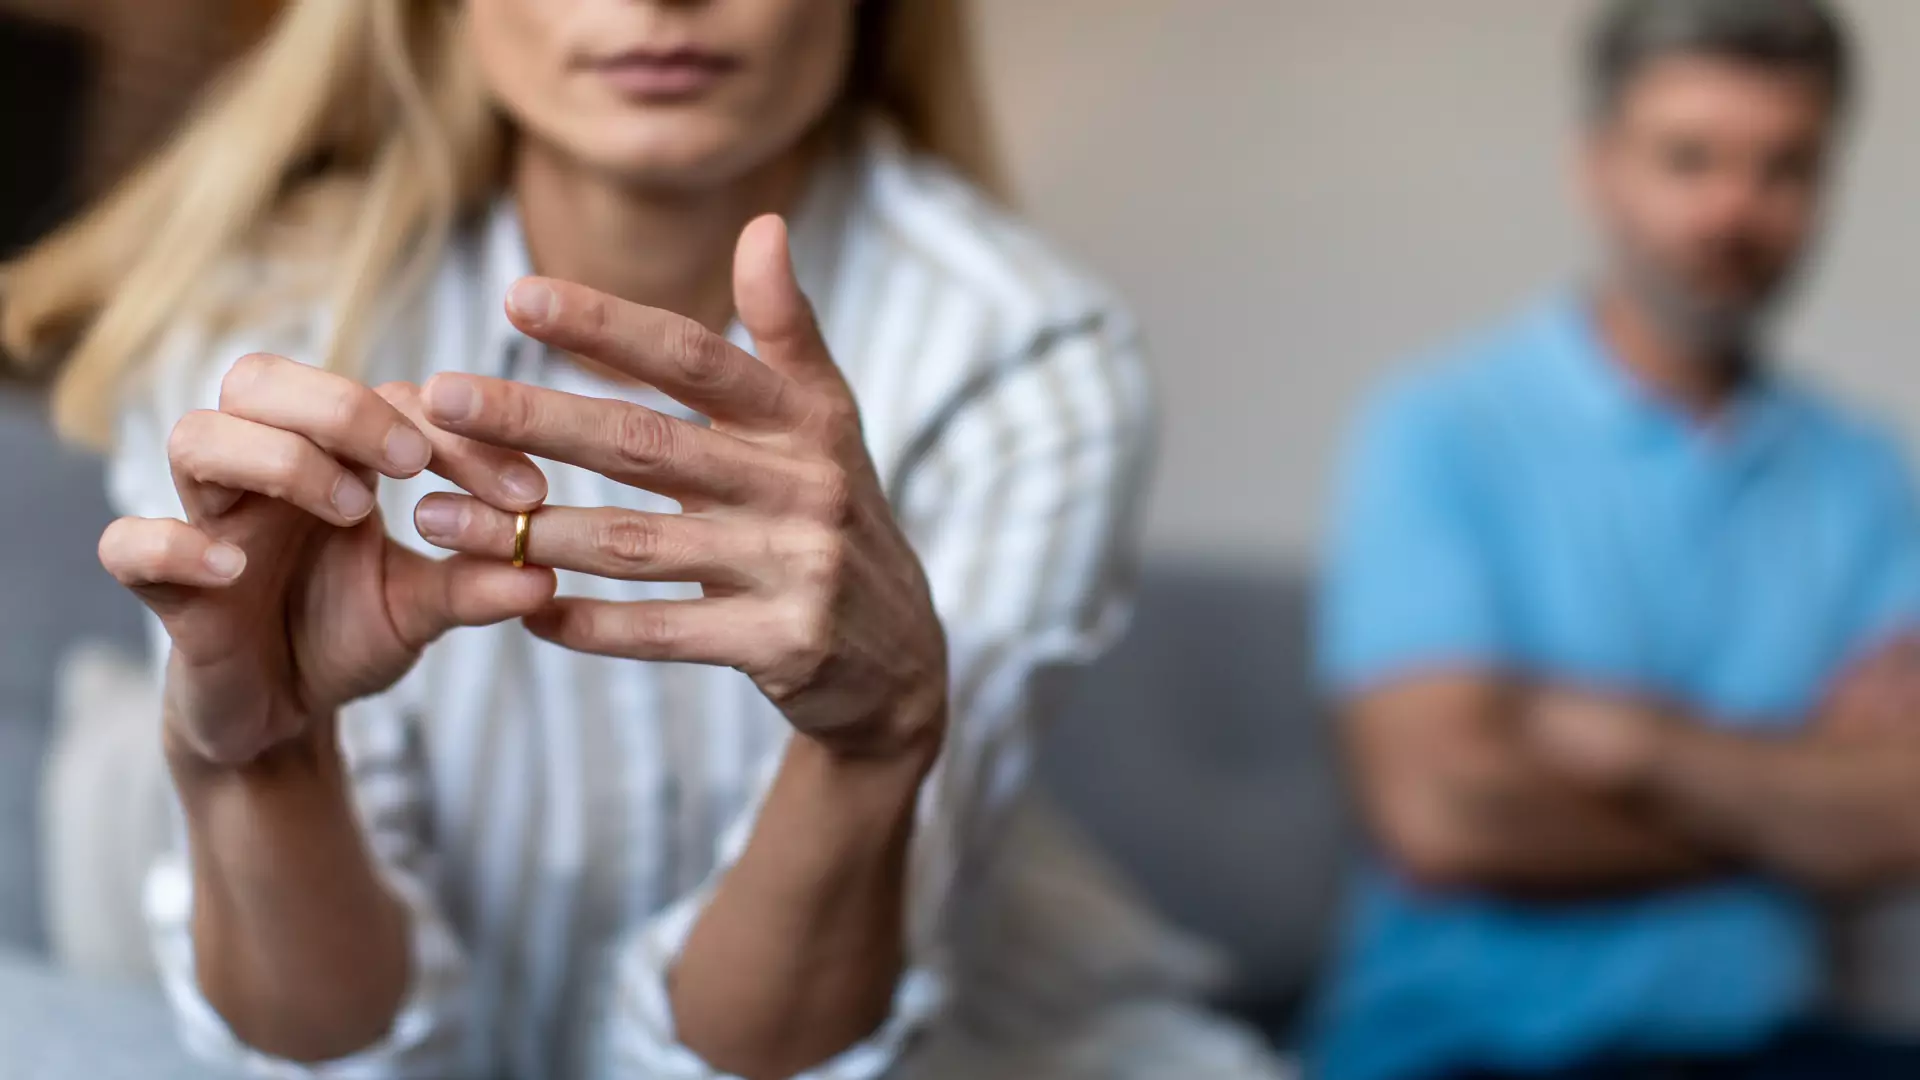 Prawniczka zdradza, dlaczego w styczniu jest najwięcej rozwodów. Bolesna diagnoza